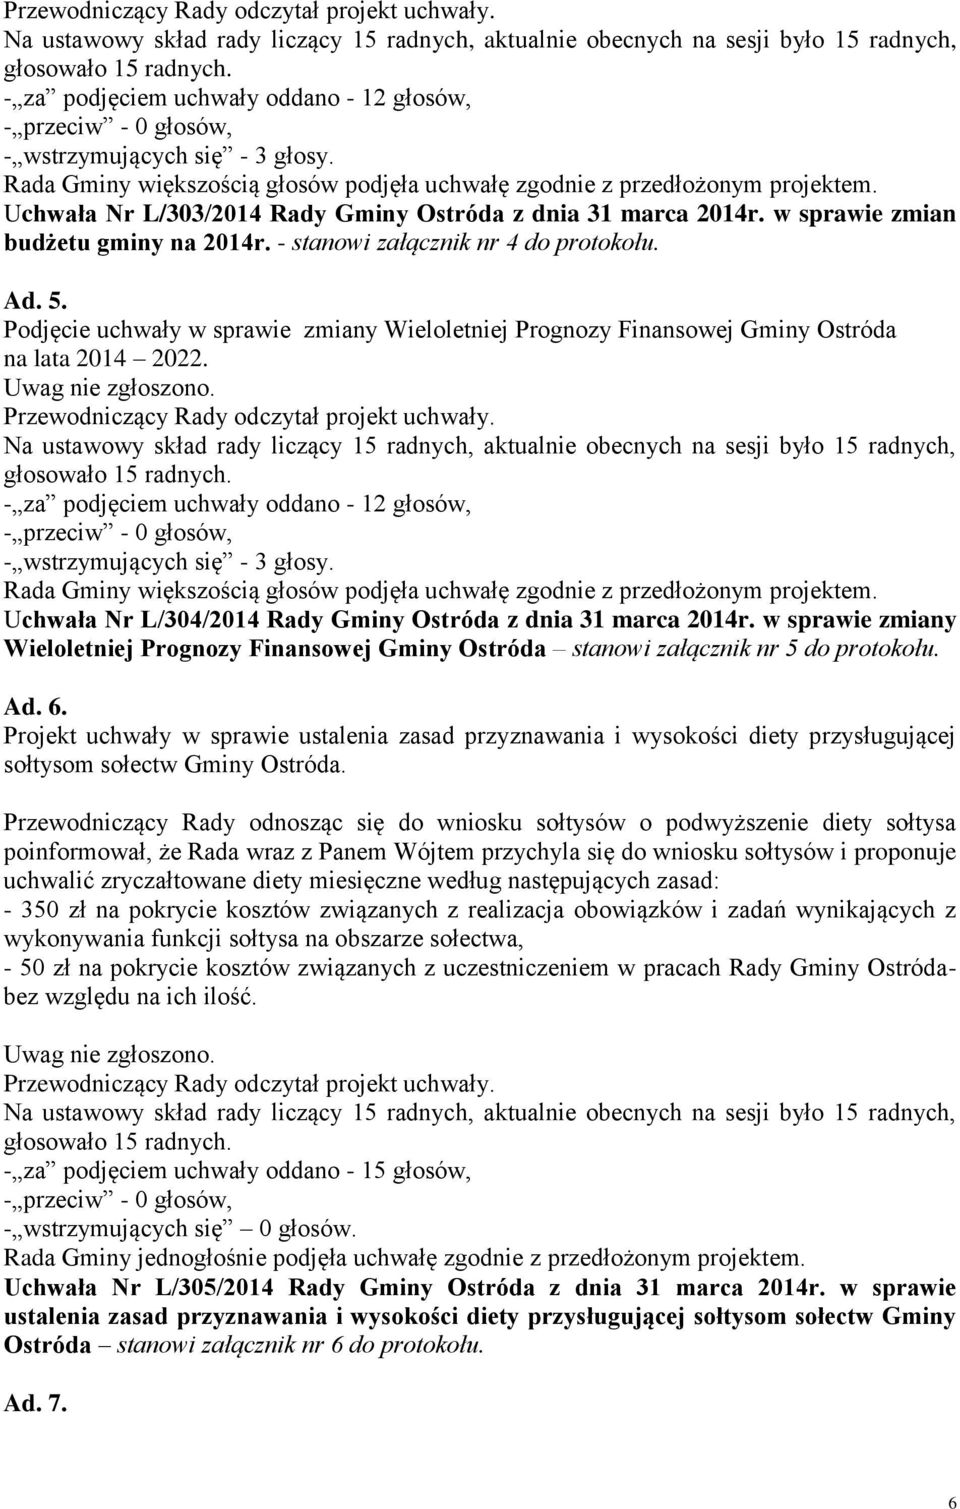 Podjęcie uchwały w sprawie zmiany Wieloletniej Prognozy Finansowej Gminy Ostróda na lata 2014 2022.  Uchwała Nr L/304/2014 Rady Gminy Ostróda z dnia 31 marca 2014r.